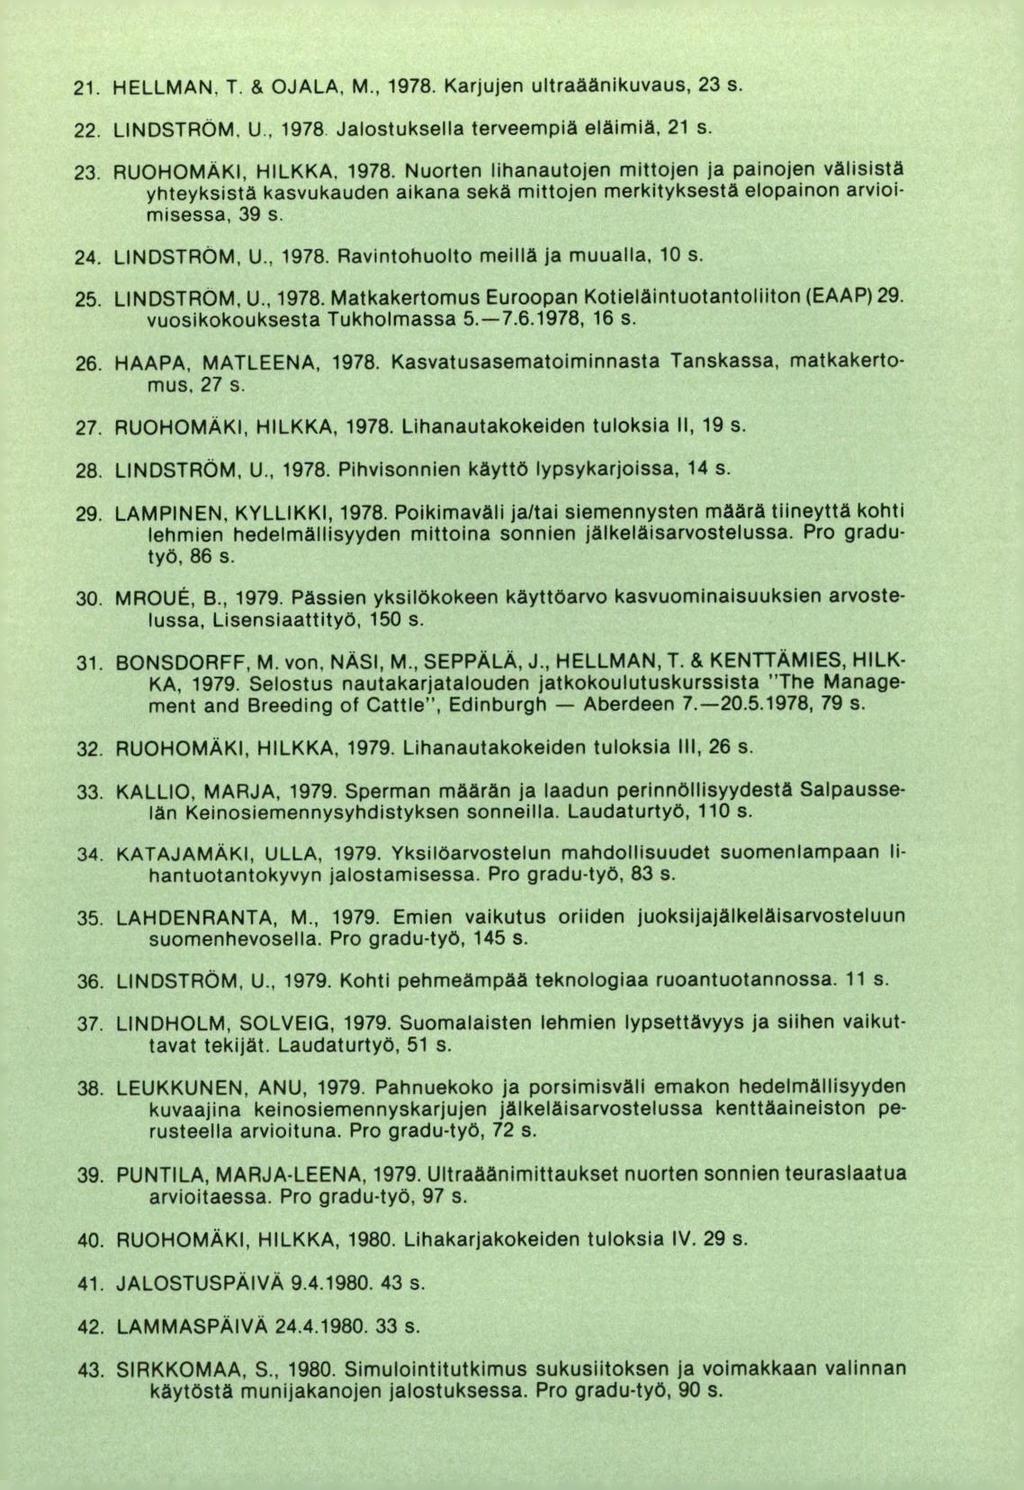 HELLMAN. T. & OJALA. M., 1978. Karjujen ultraäänikuvaus, 23 s. LINDSTROM. U. 1978 Jalostuksella terveempiä eläimiä, 21 s. RUOHOMAKI, HILKKA. 1978. Nuorten lihanautojen mittojen ja painojen välisistä yhteyksistä kasvukauden aikana sekä mittojen merkityksestä elopainon arvioimisessa, 39 s.